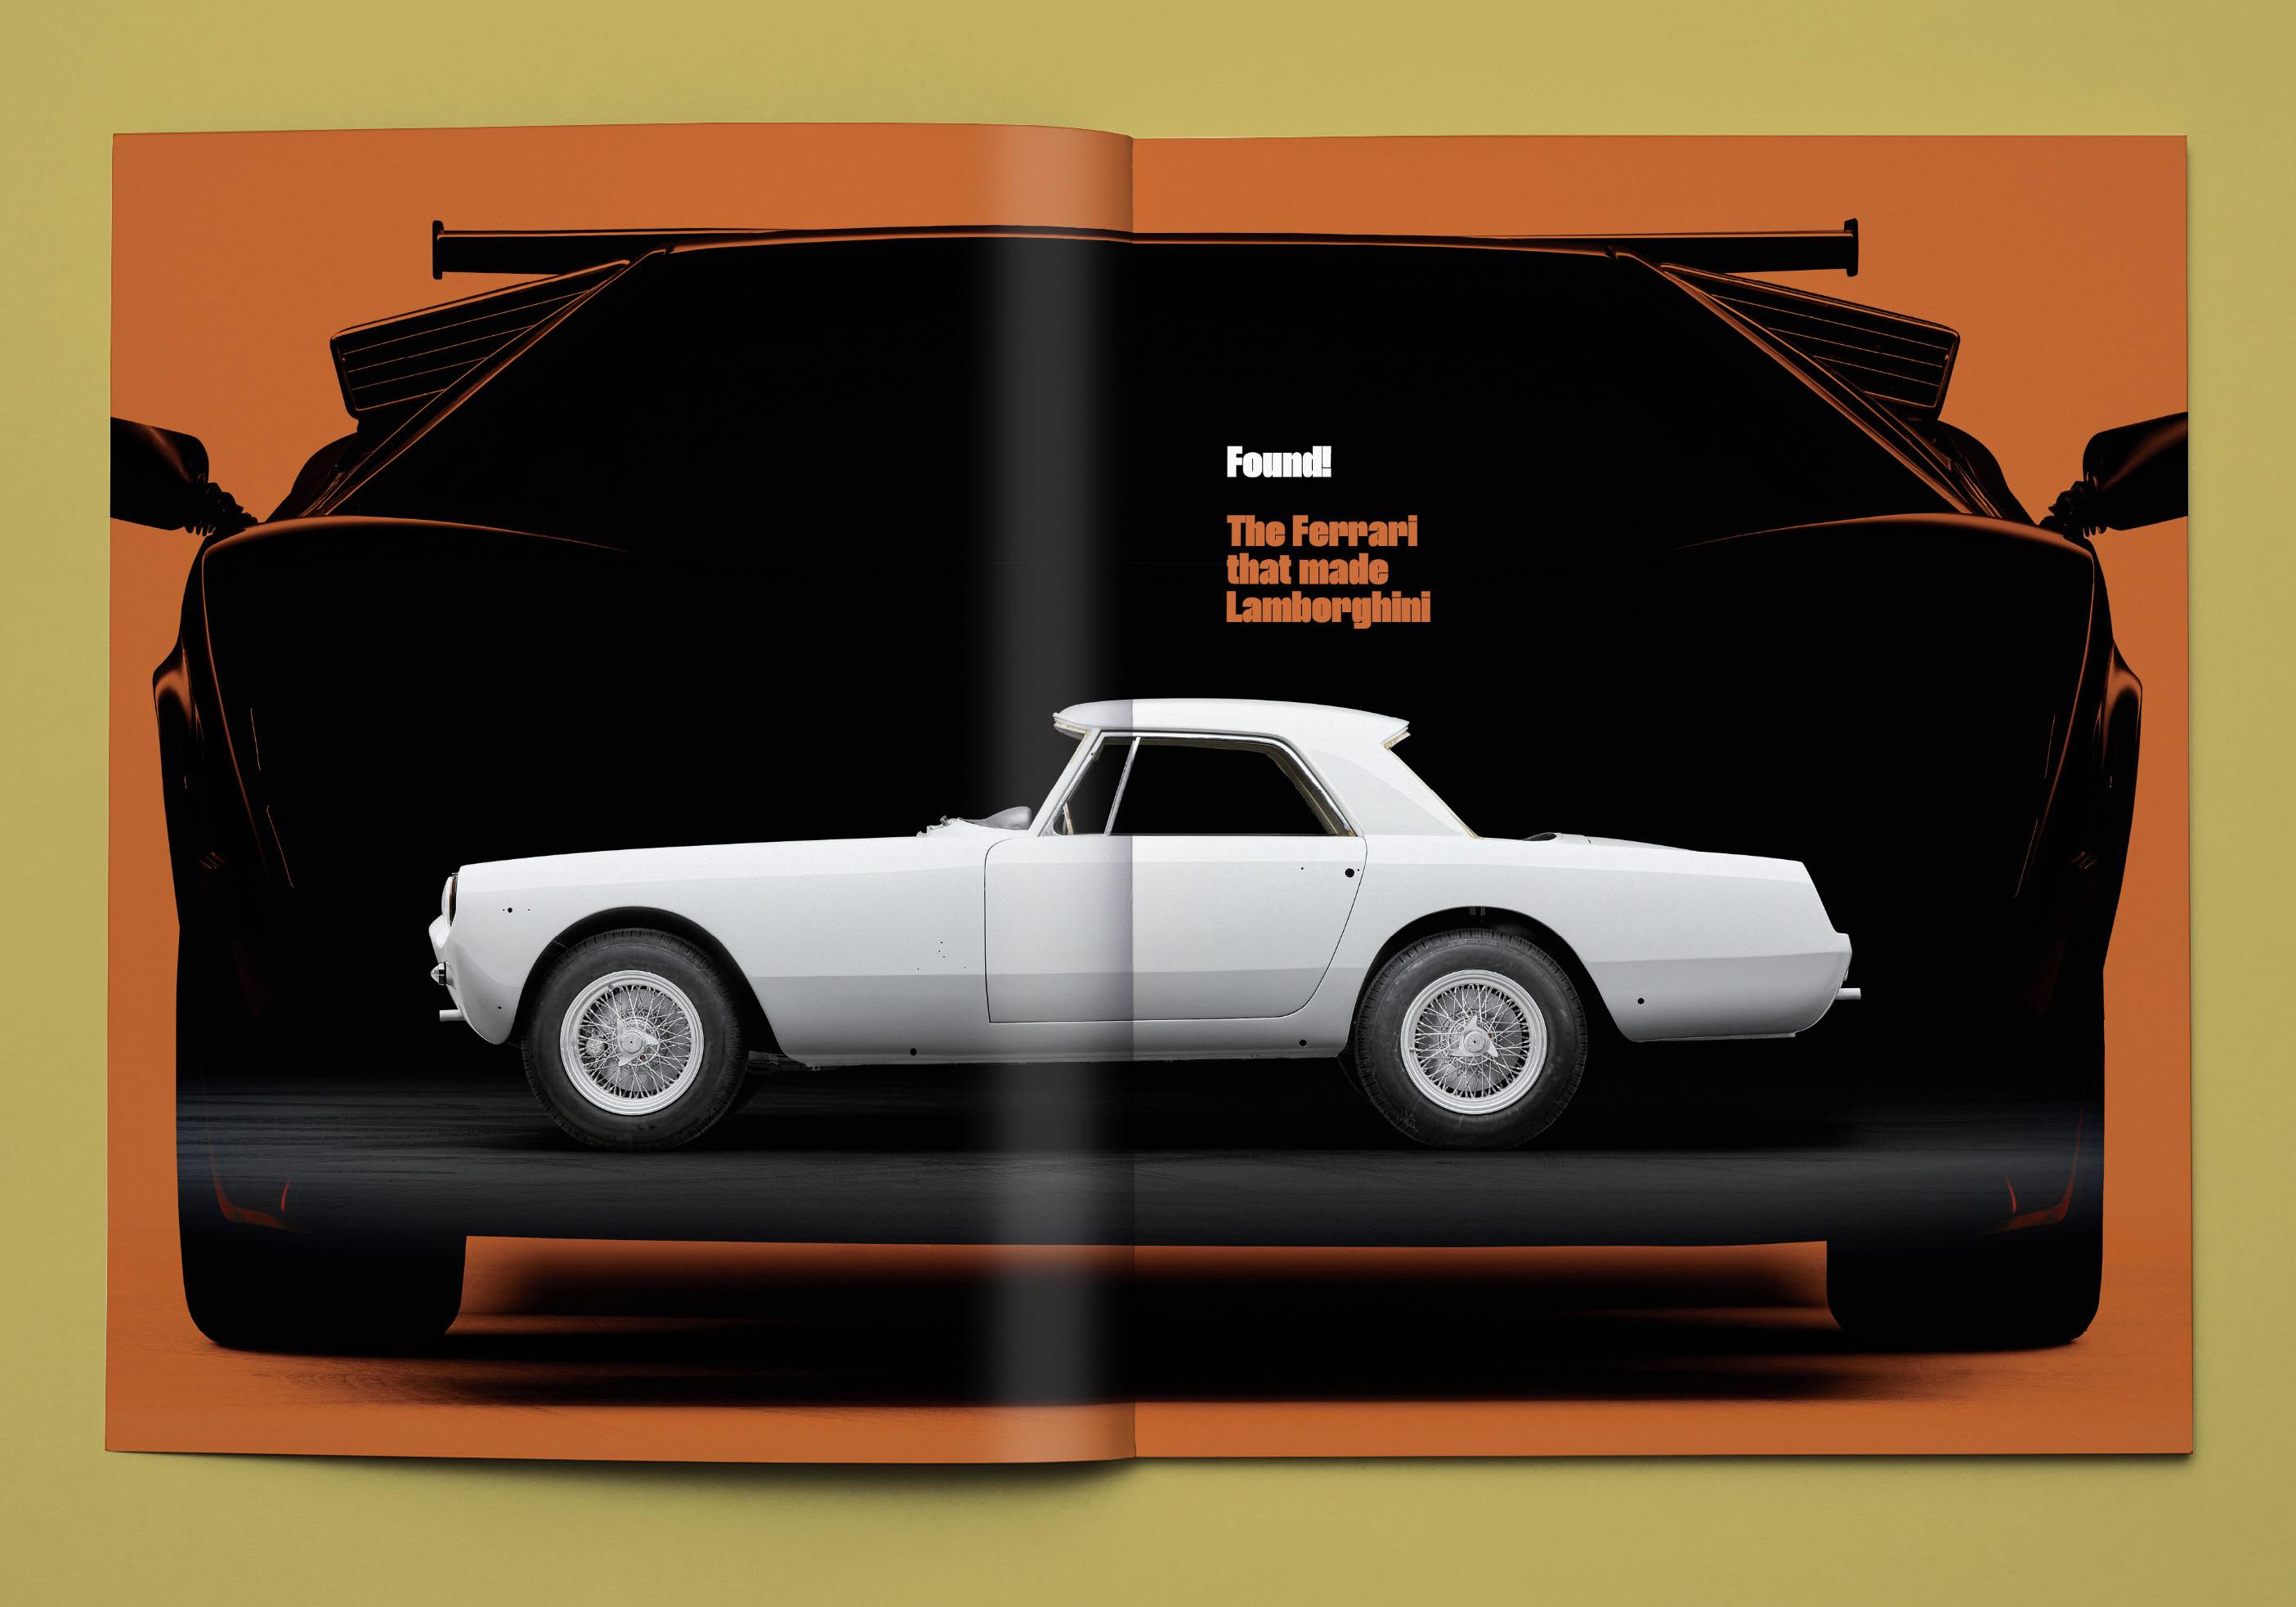 Lamborghini magazine spread